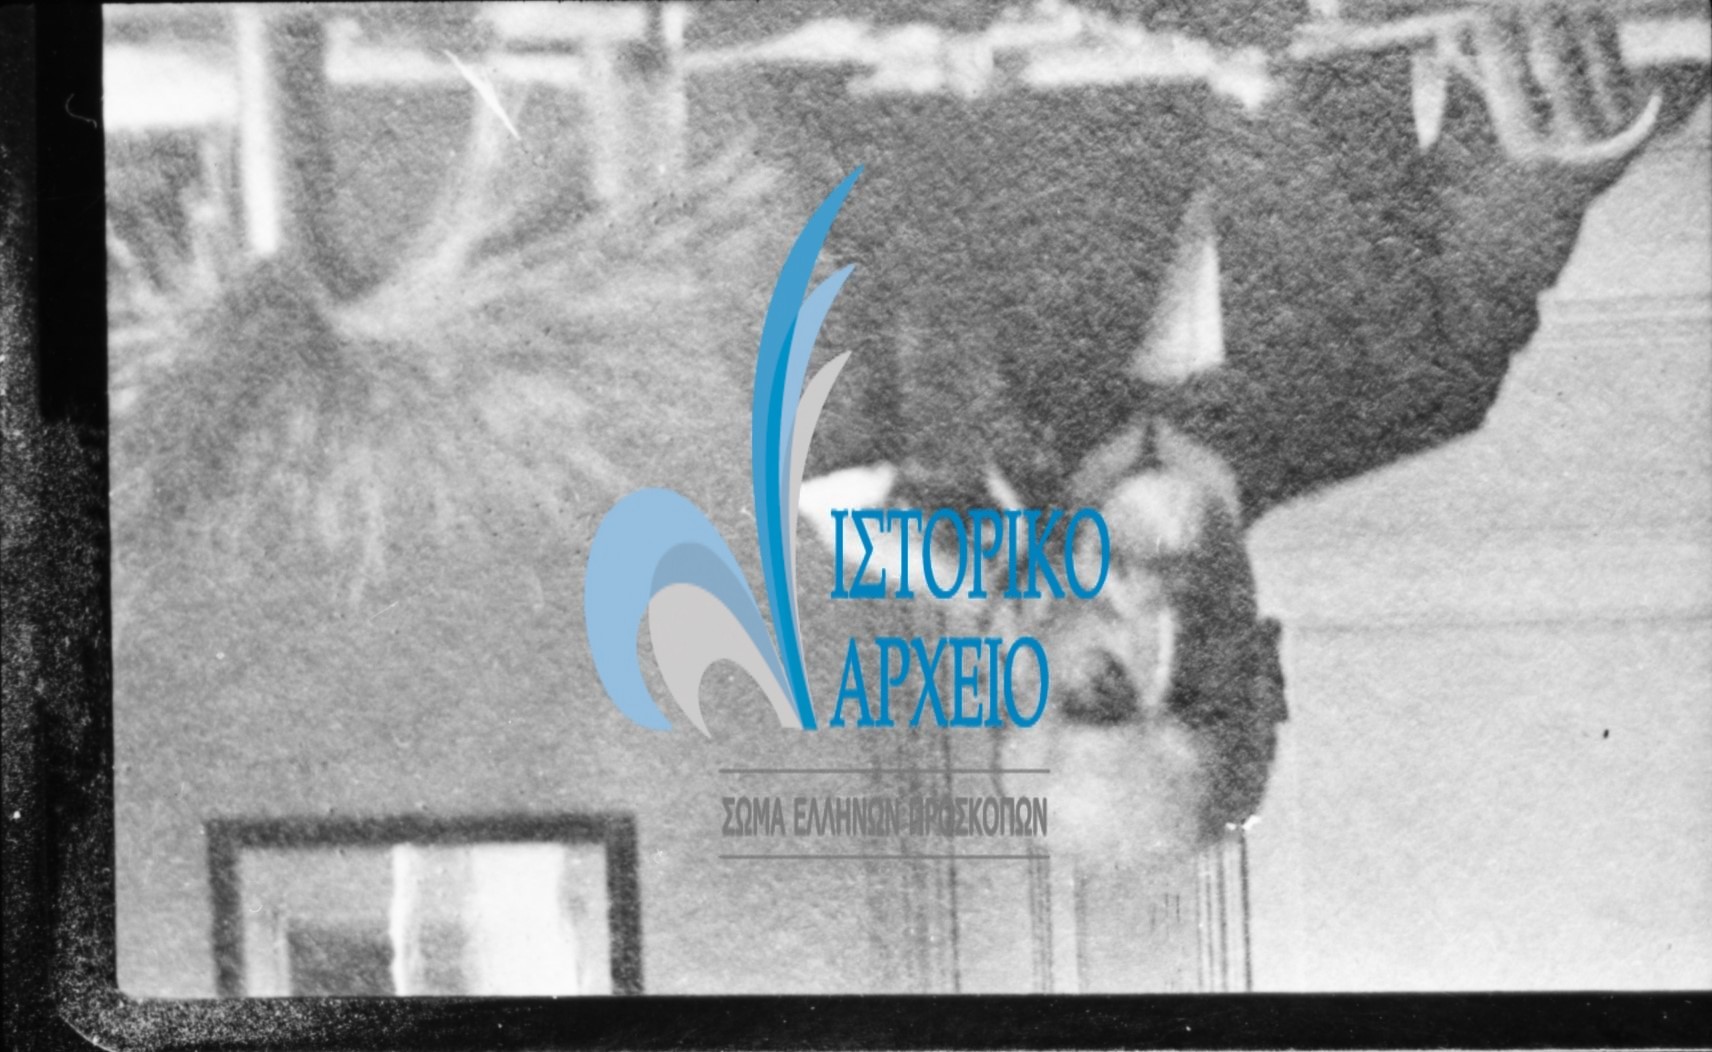 Το 2010 το Σώμα Ελλήνων Προσκόπων συμπλήρωσε 100 Χρόνια Ιστορίας. Φωτογραφίες από δράσεις εκδηλώσεις και επετειακές δραστηριότητες εκείνης της χρονιάς.